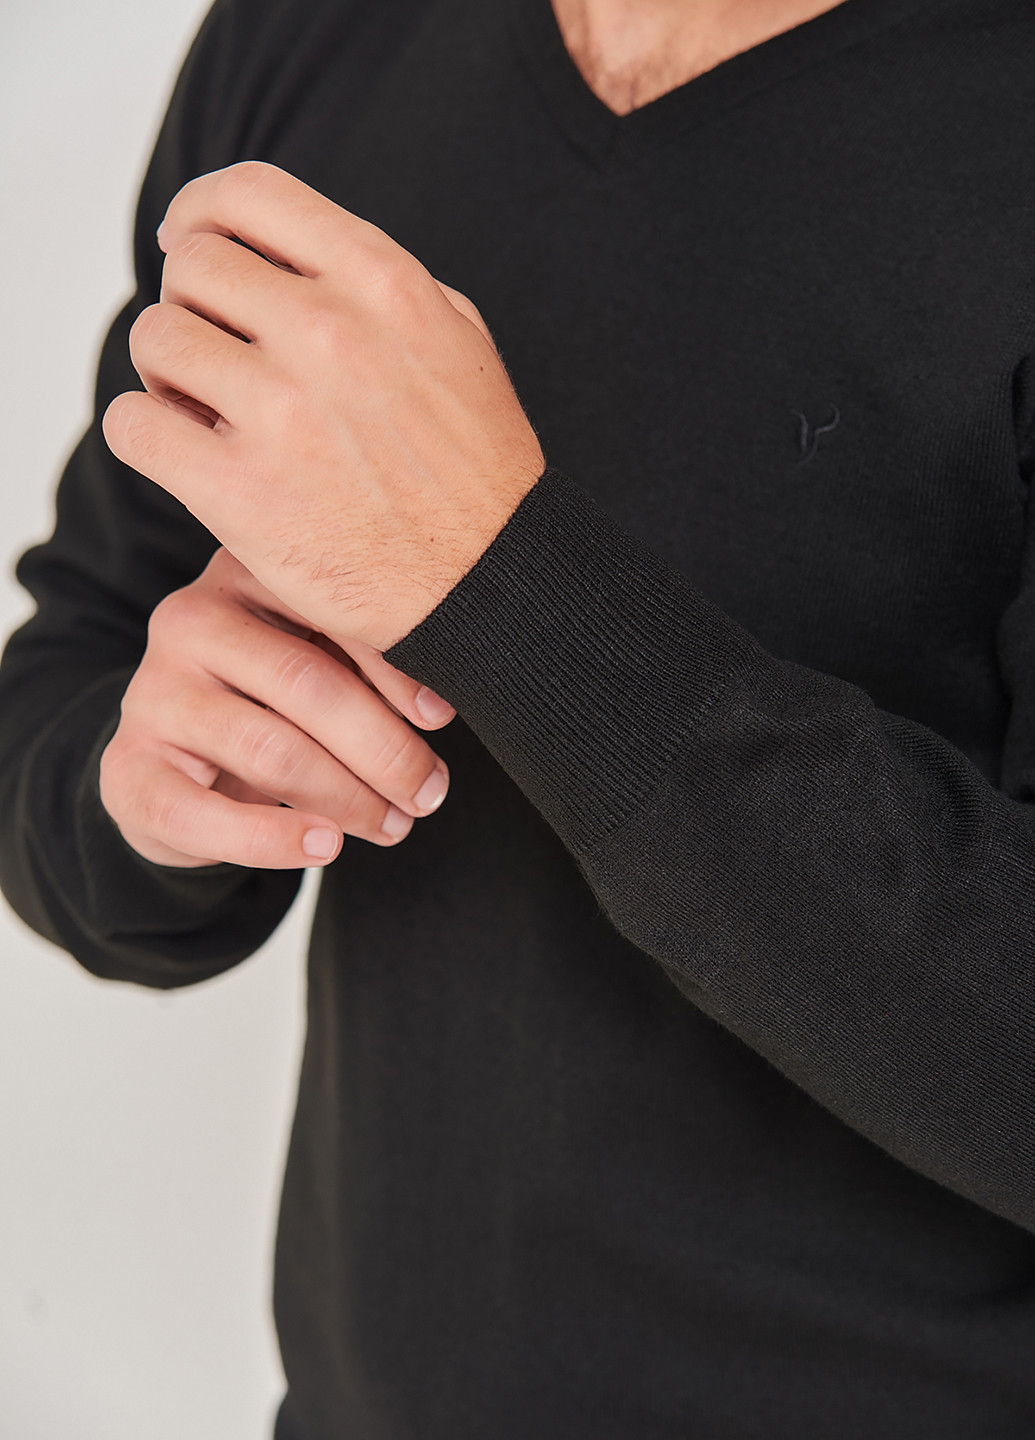 Черный демисезонный свитер Stendo